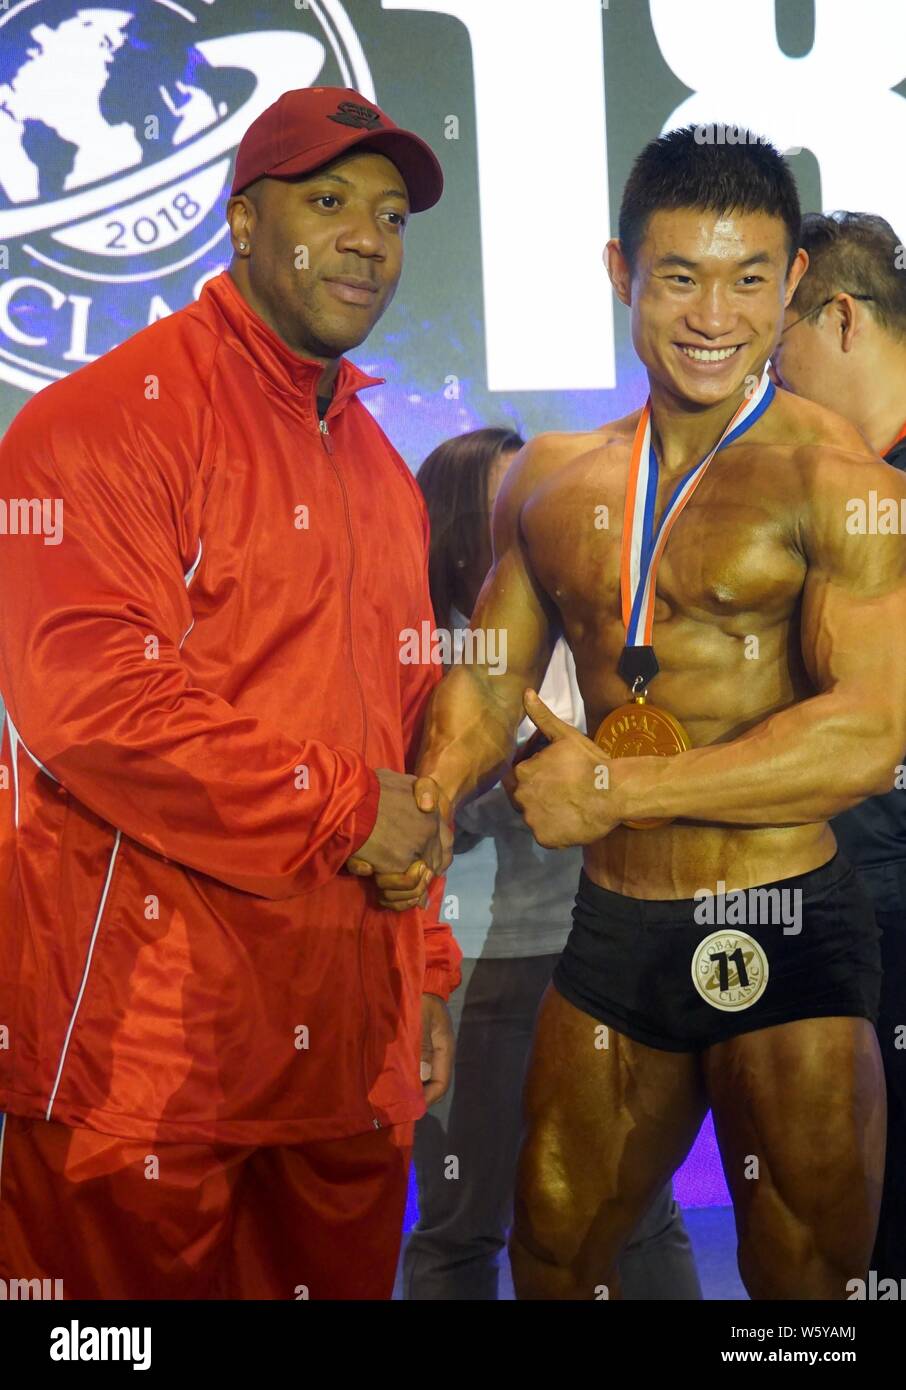 Jamaican-American IFBB professional Bodybuilder Shawn Rhoden, Links, Posen für Fotos mit einem Teilnehmer während einer Bodybuilding Wettkampf in Shanghai. Stockfoto